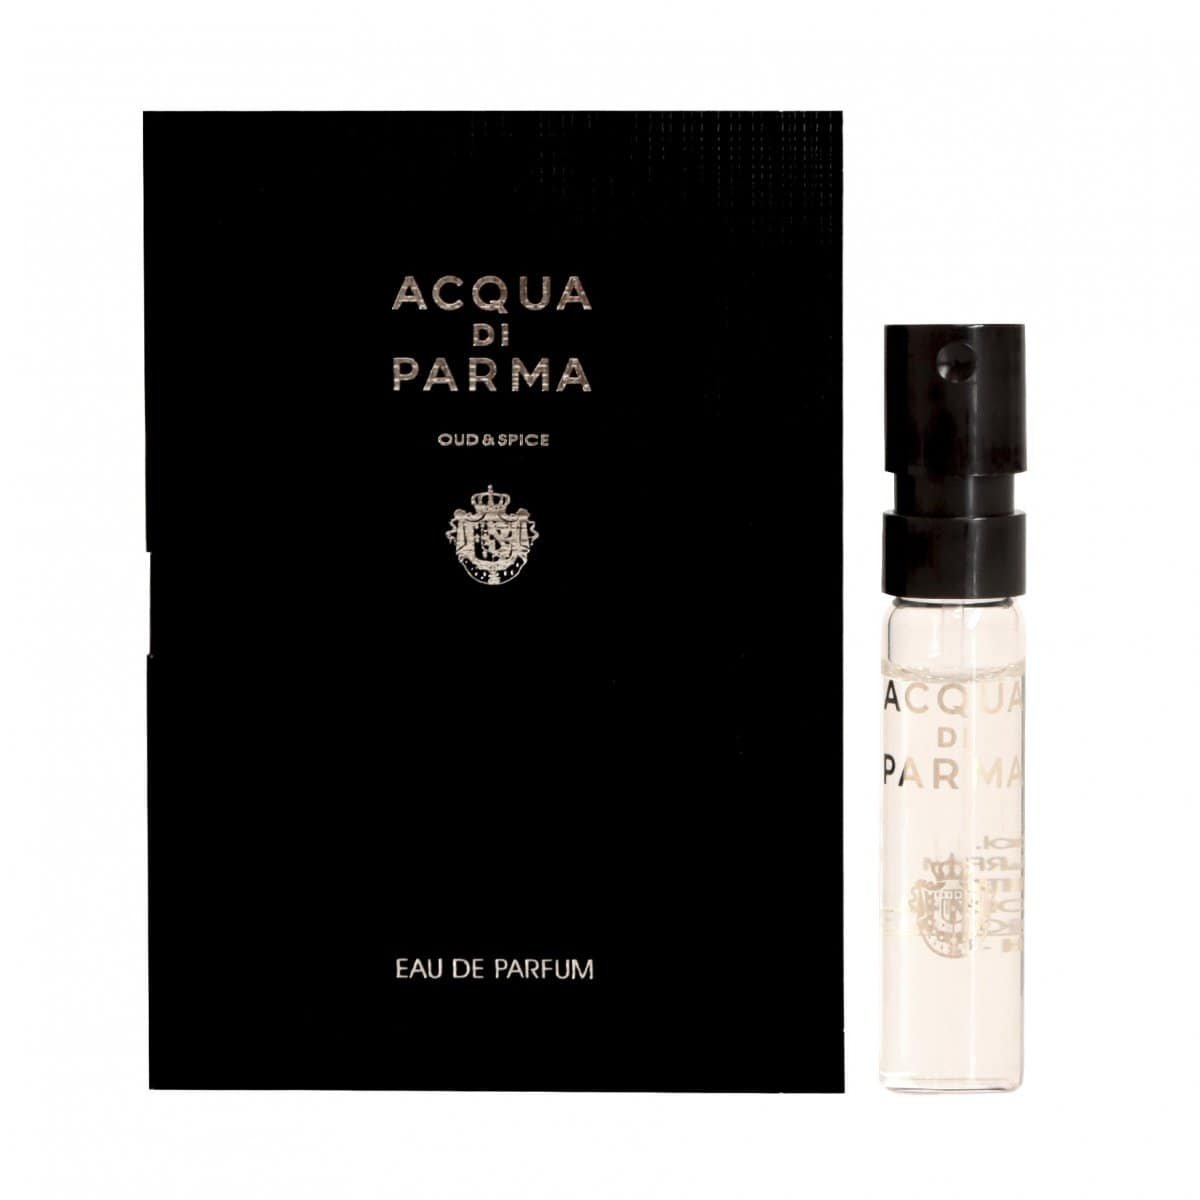 Acqua Di Parma Oud & Spice 1.5 ml 0.05 uncji oficjalne próbki perfum, Acqua Di Parma Oud & Spice 1.5 ml 0.05 uncji oficjalne próbki zapachów